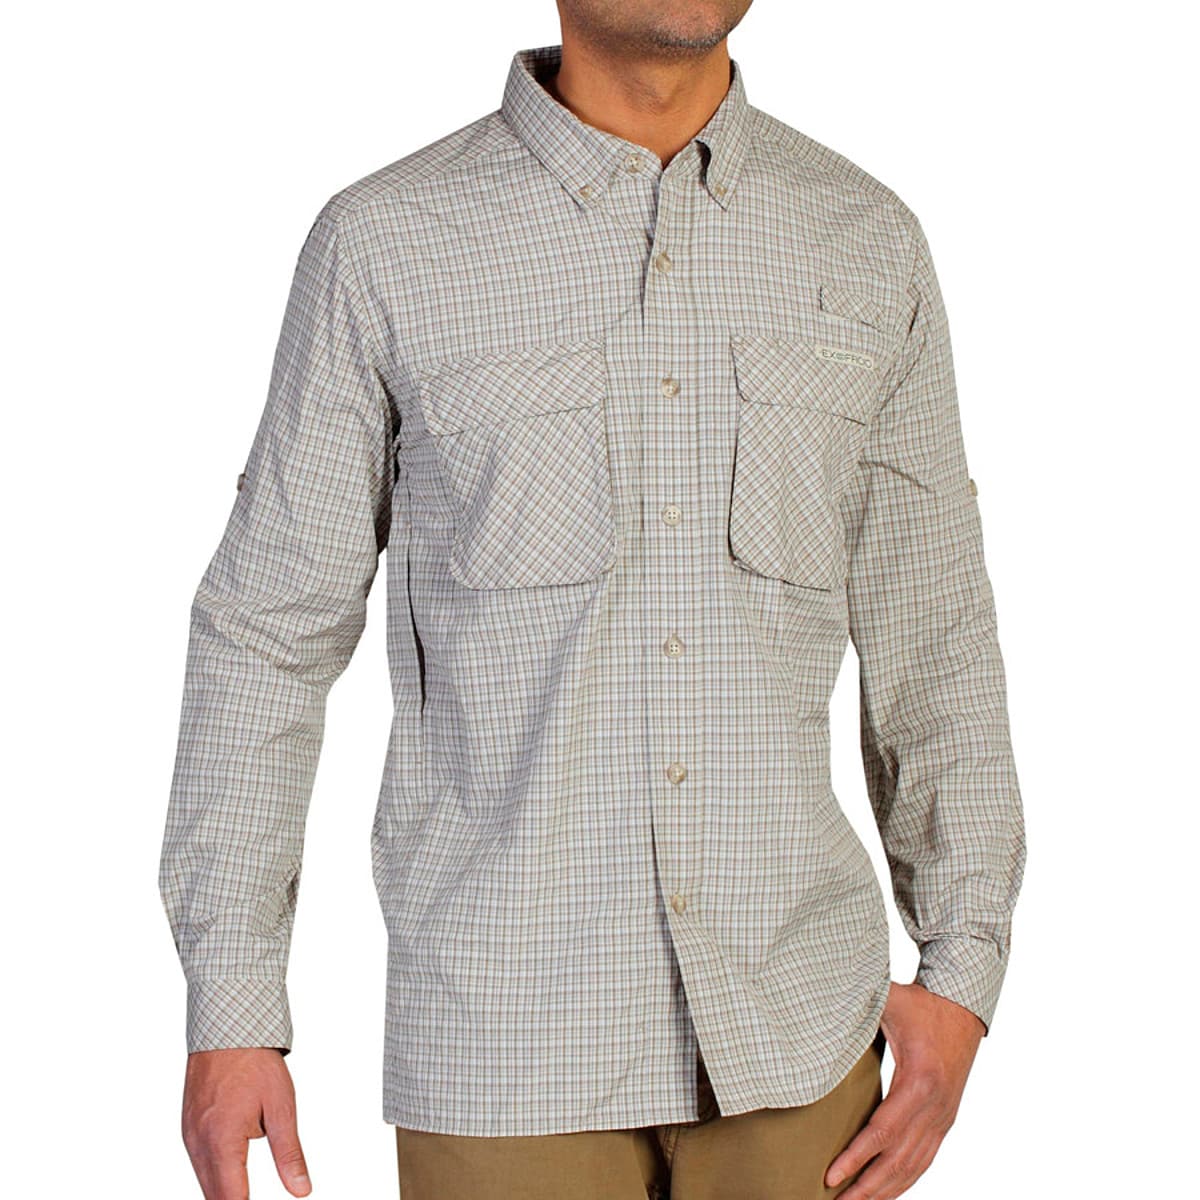 ExOfficio Air Strip Lite Long Sleeve Shirt Reviews - Trailspace.com